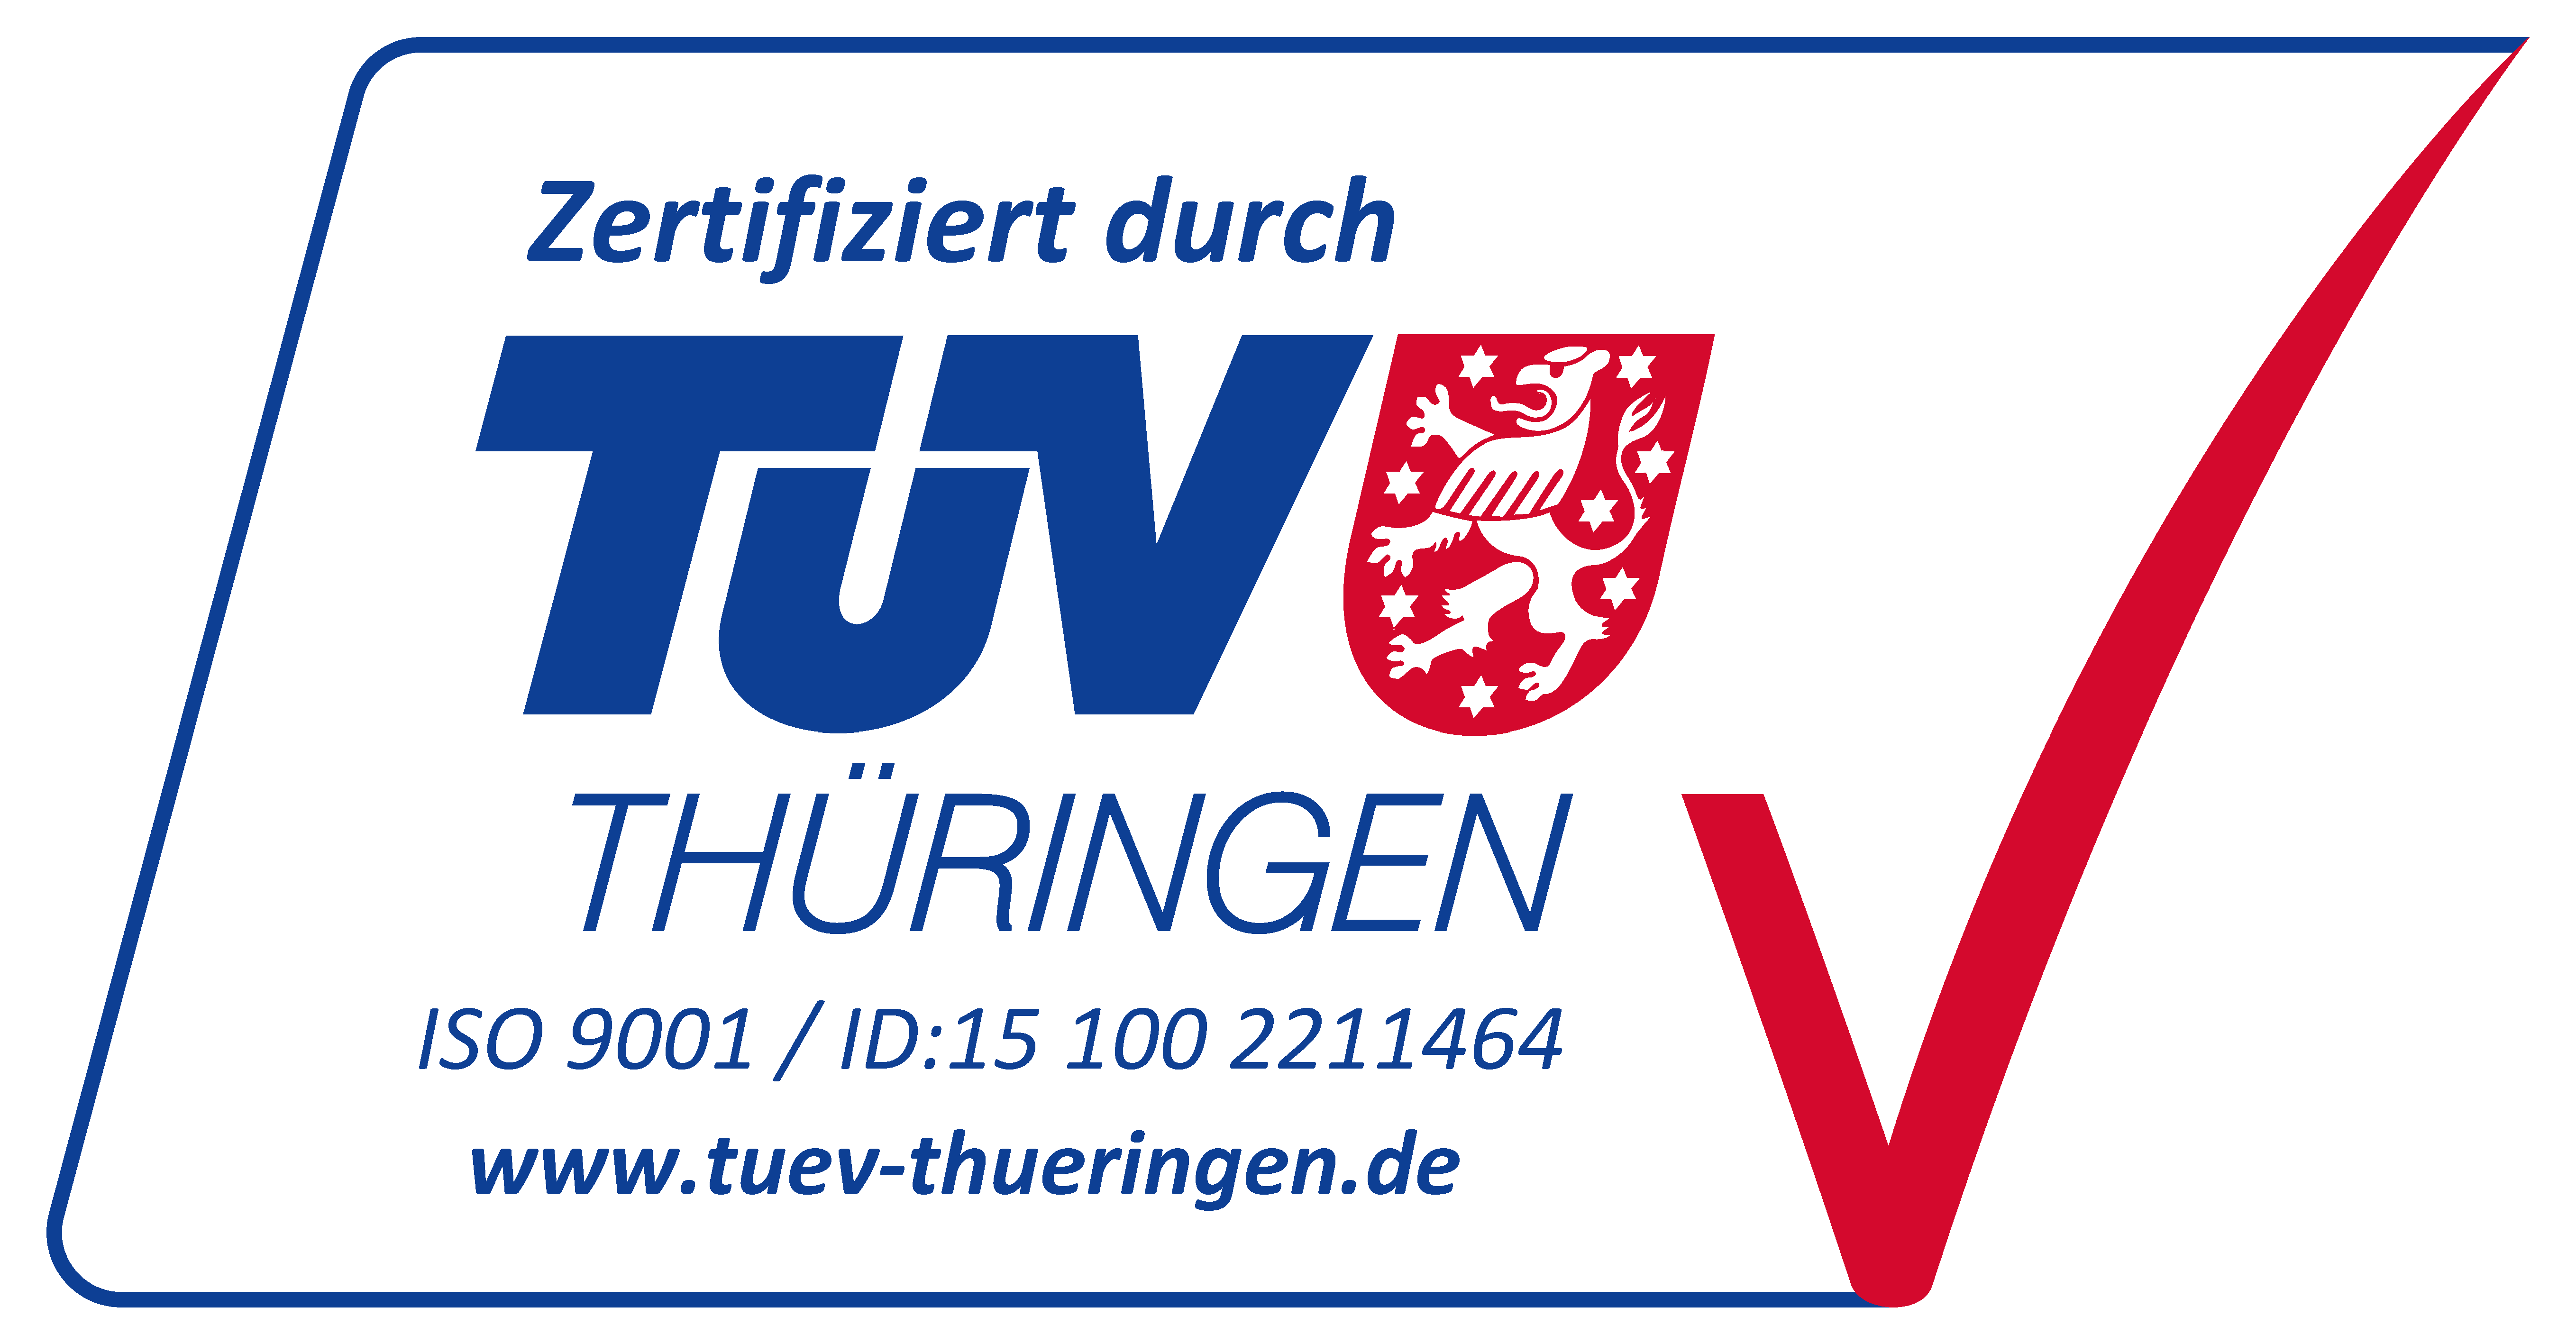 ISO 9001 zertifiziert durch TÜV-Thüringen